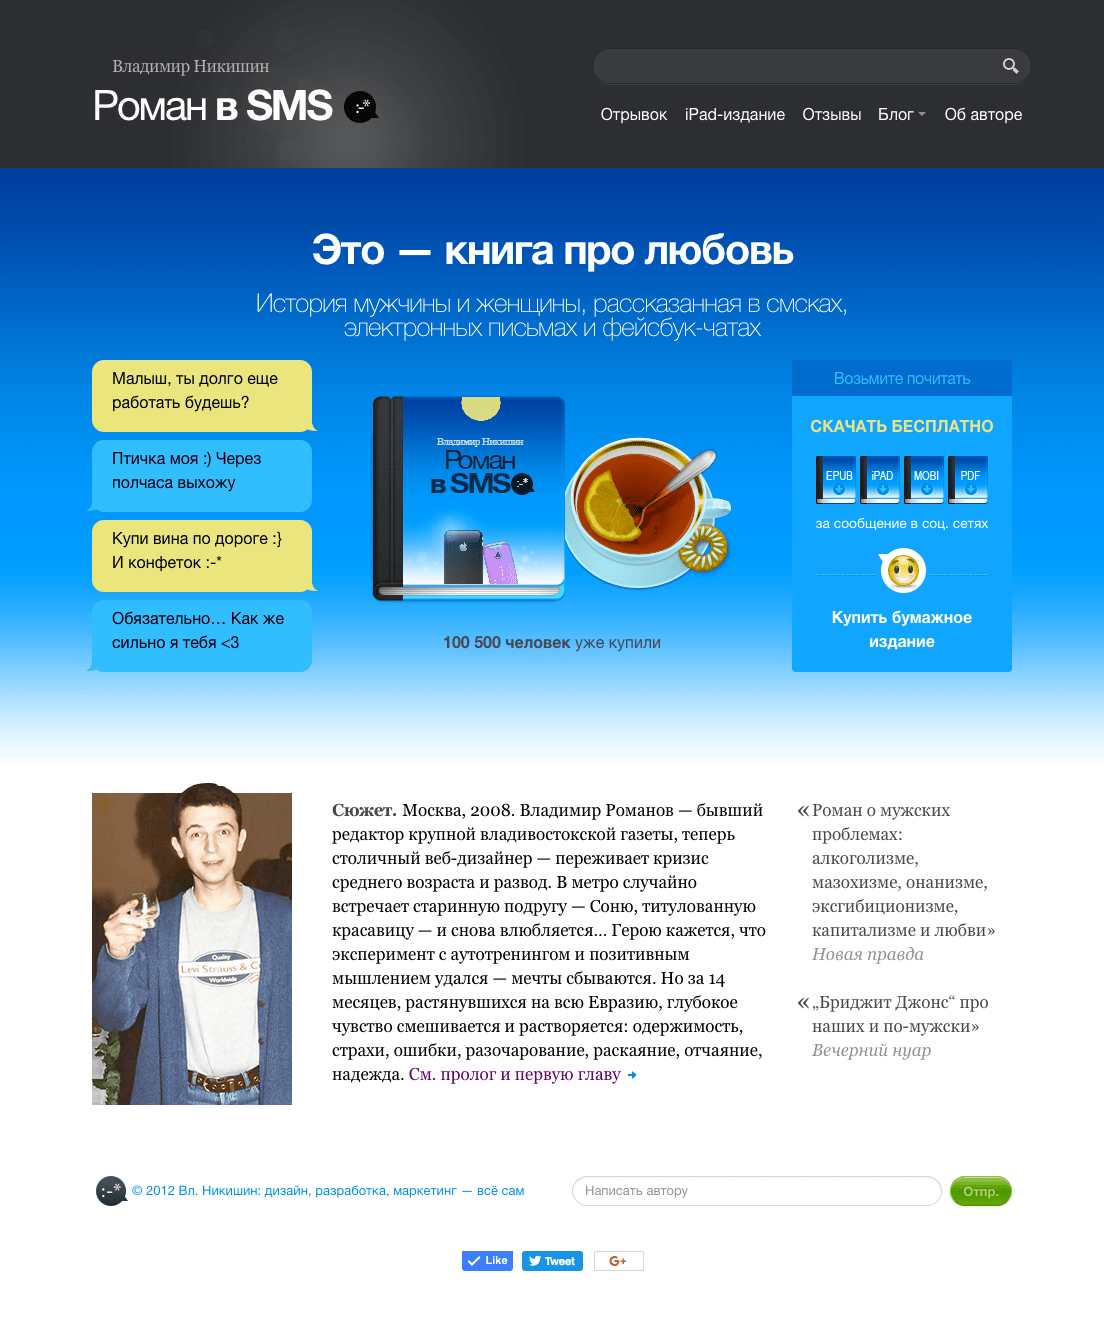 SMS Novel – Website